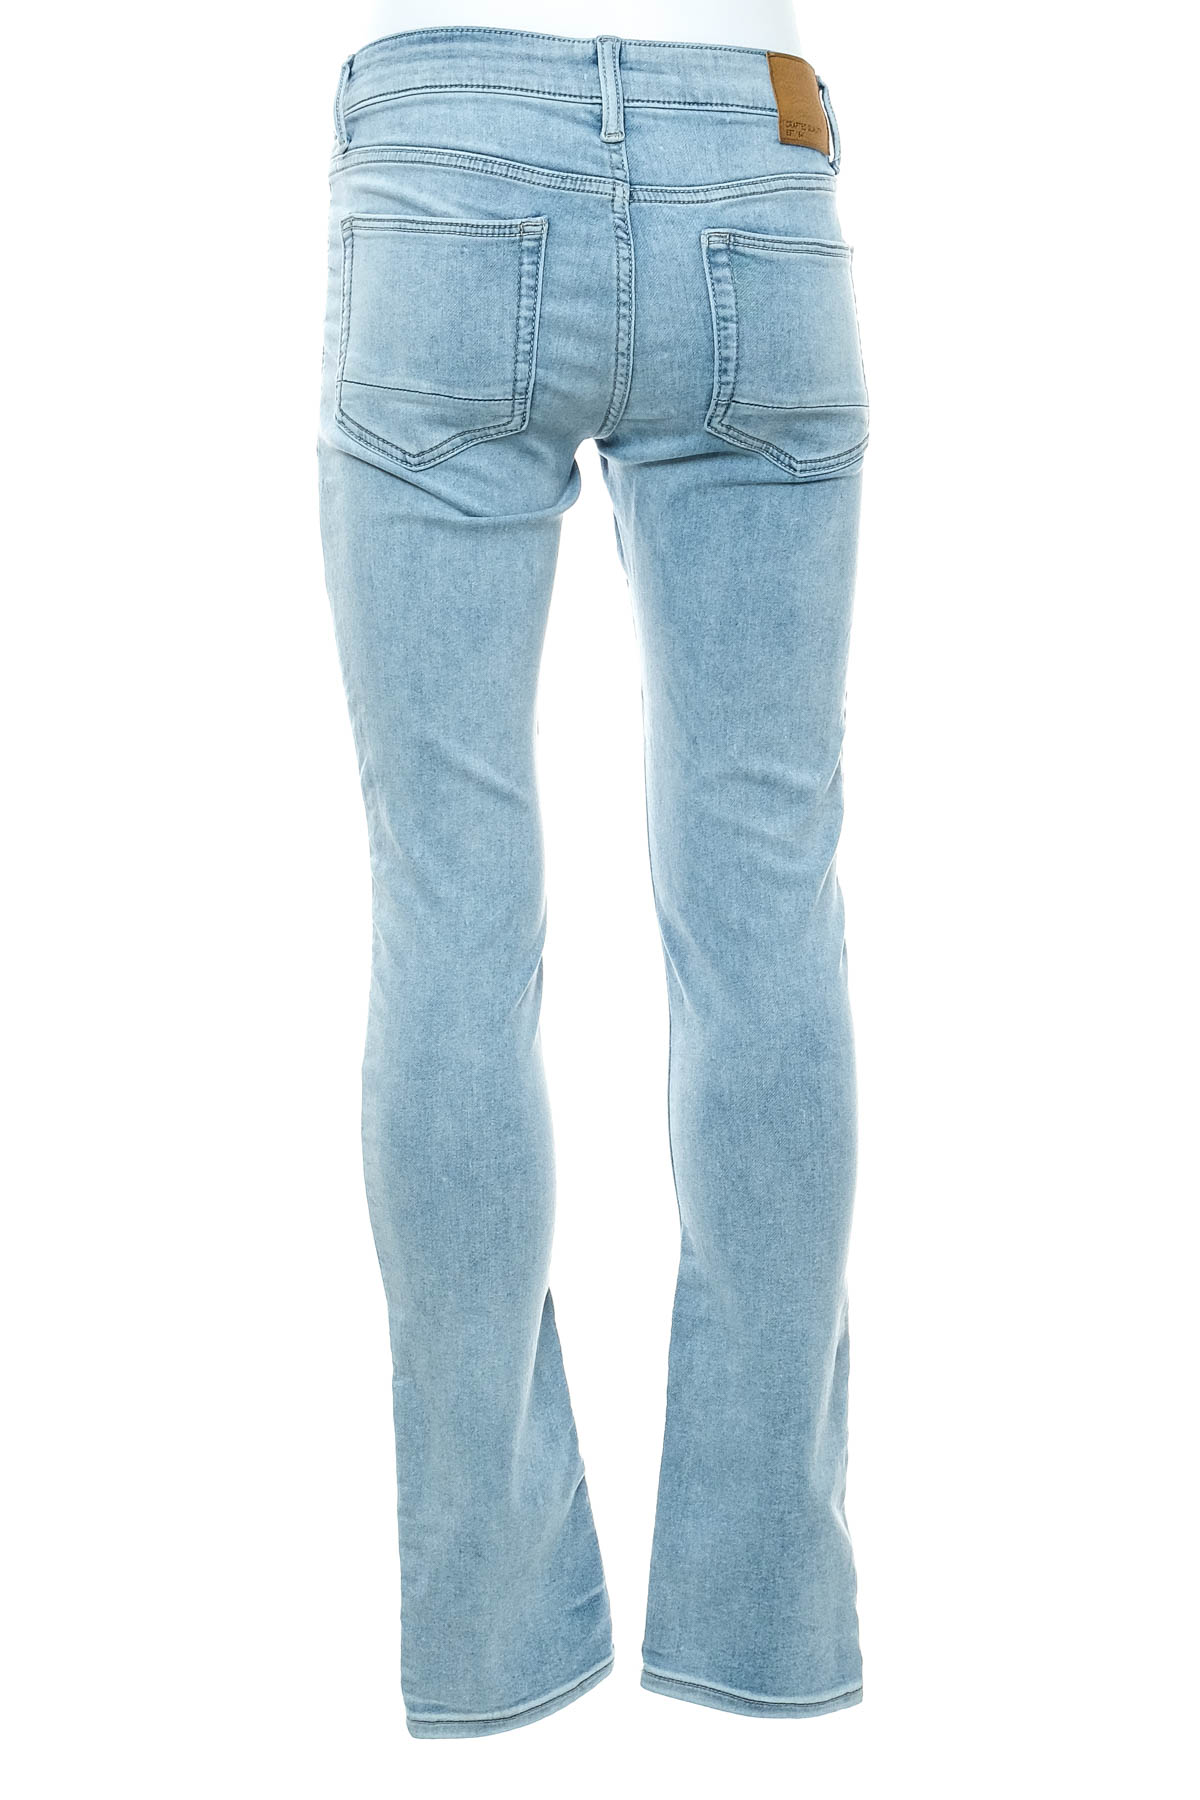 Jeans pentru bărbăți - C&A - 1